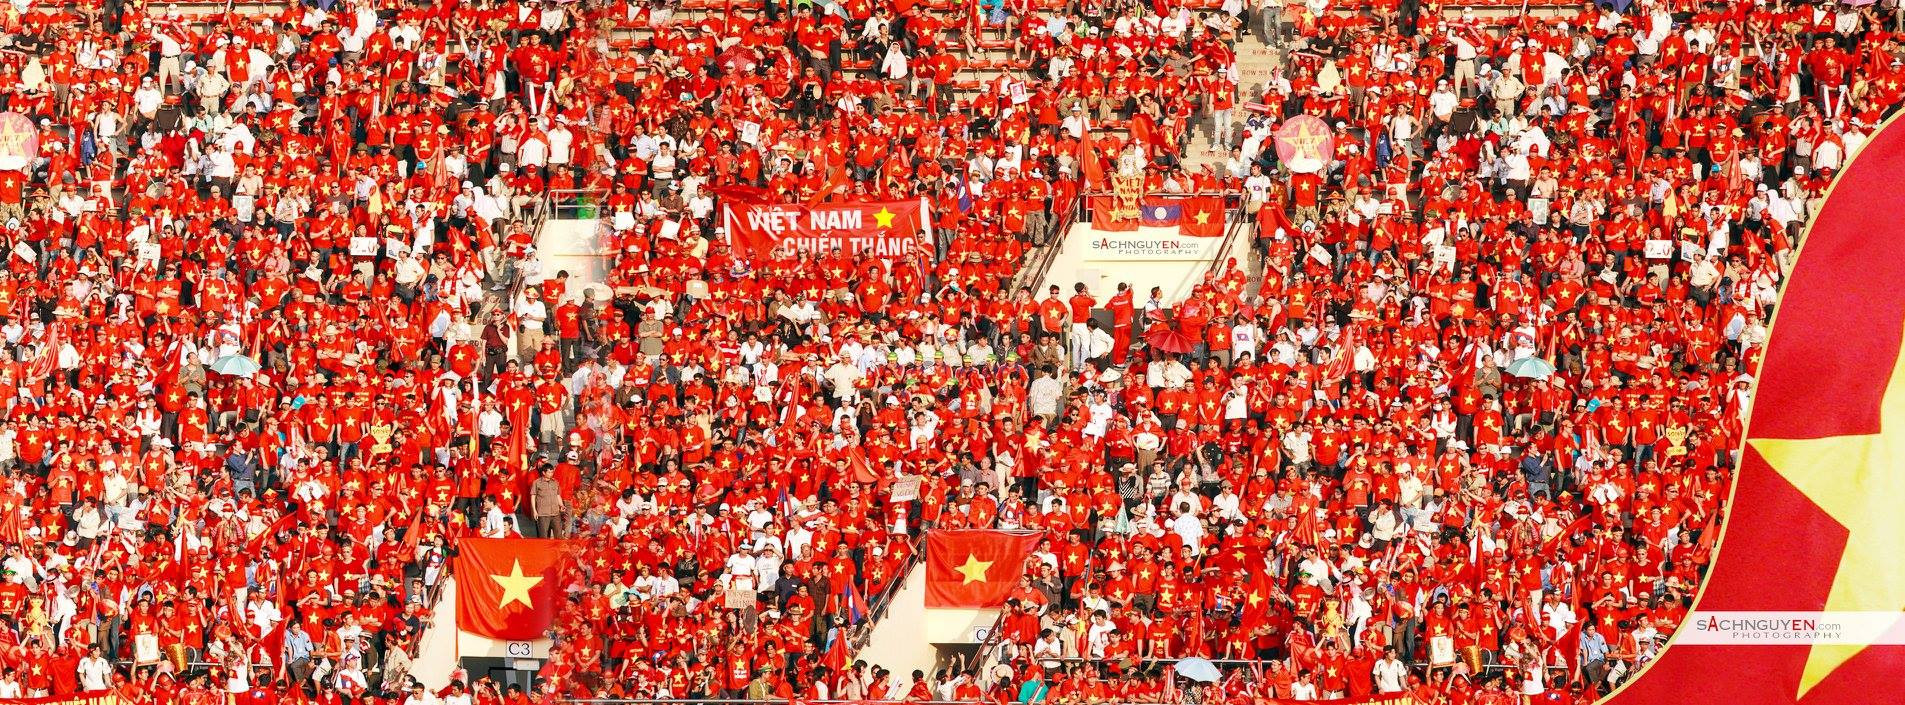 Bầu nhiệt huyết bất tận của người hâm mộ bóng đá Việt Nam. Ảnh: Sách Nguyễn